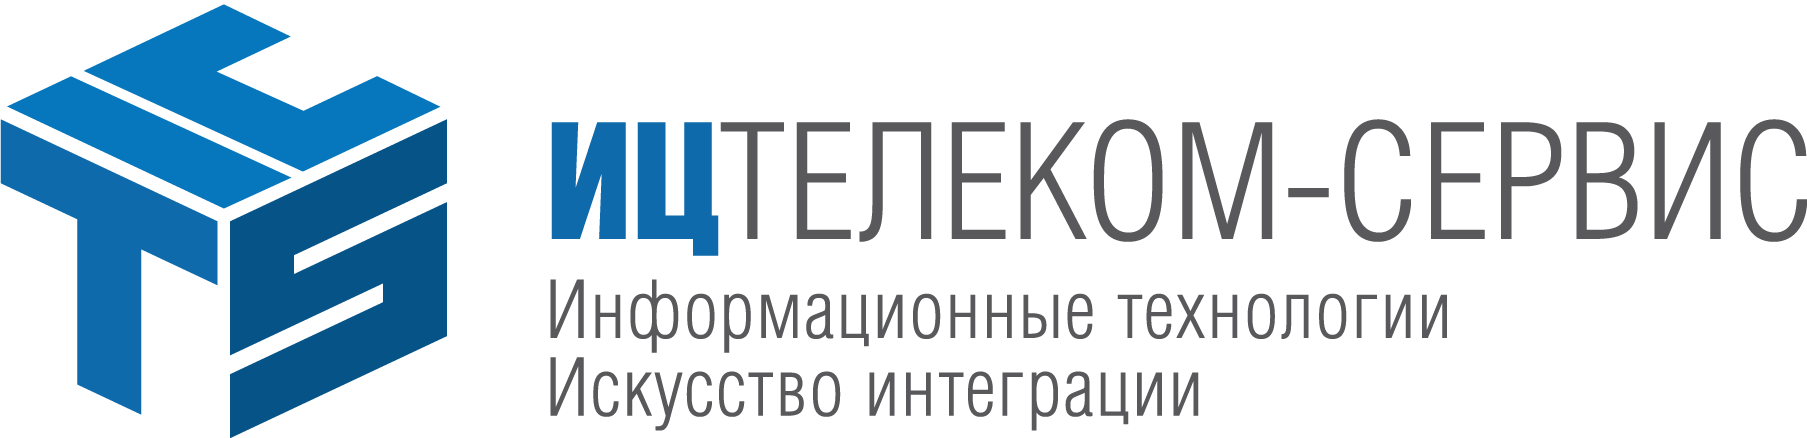 ИЦ ТЕЛЕКОМ-СЕРВИС логотип